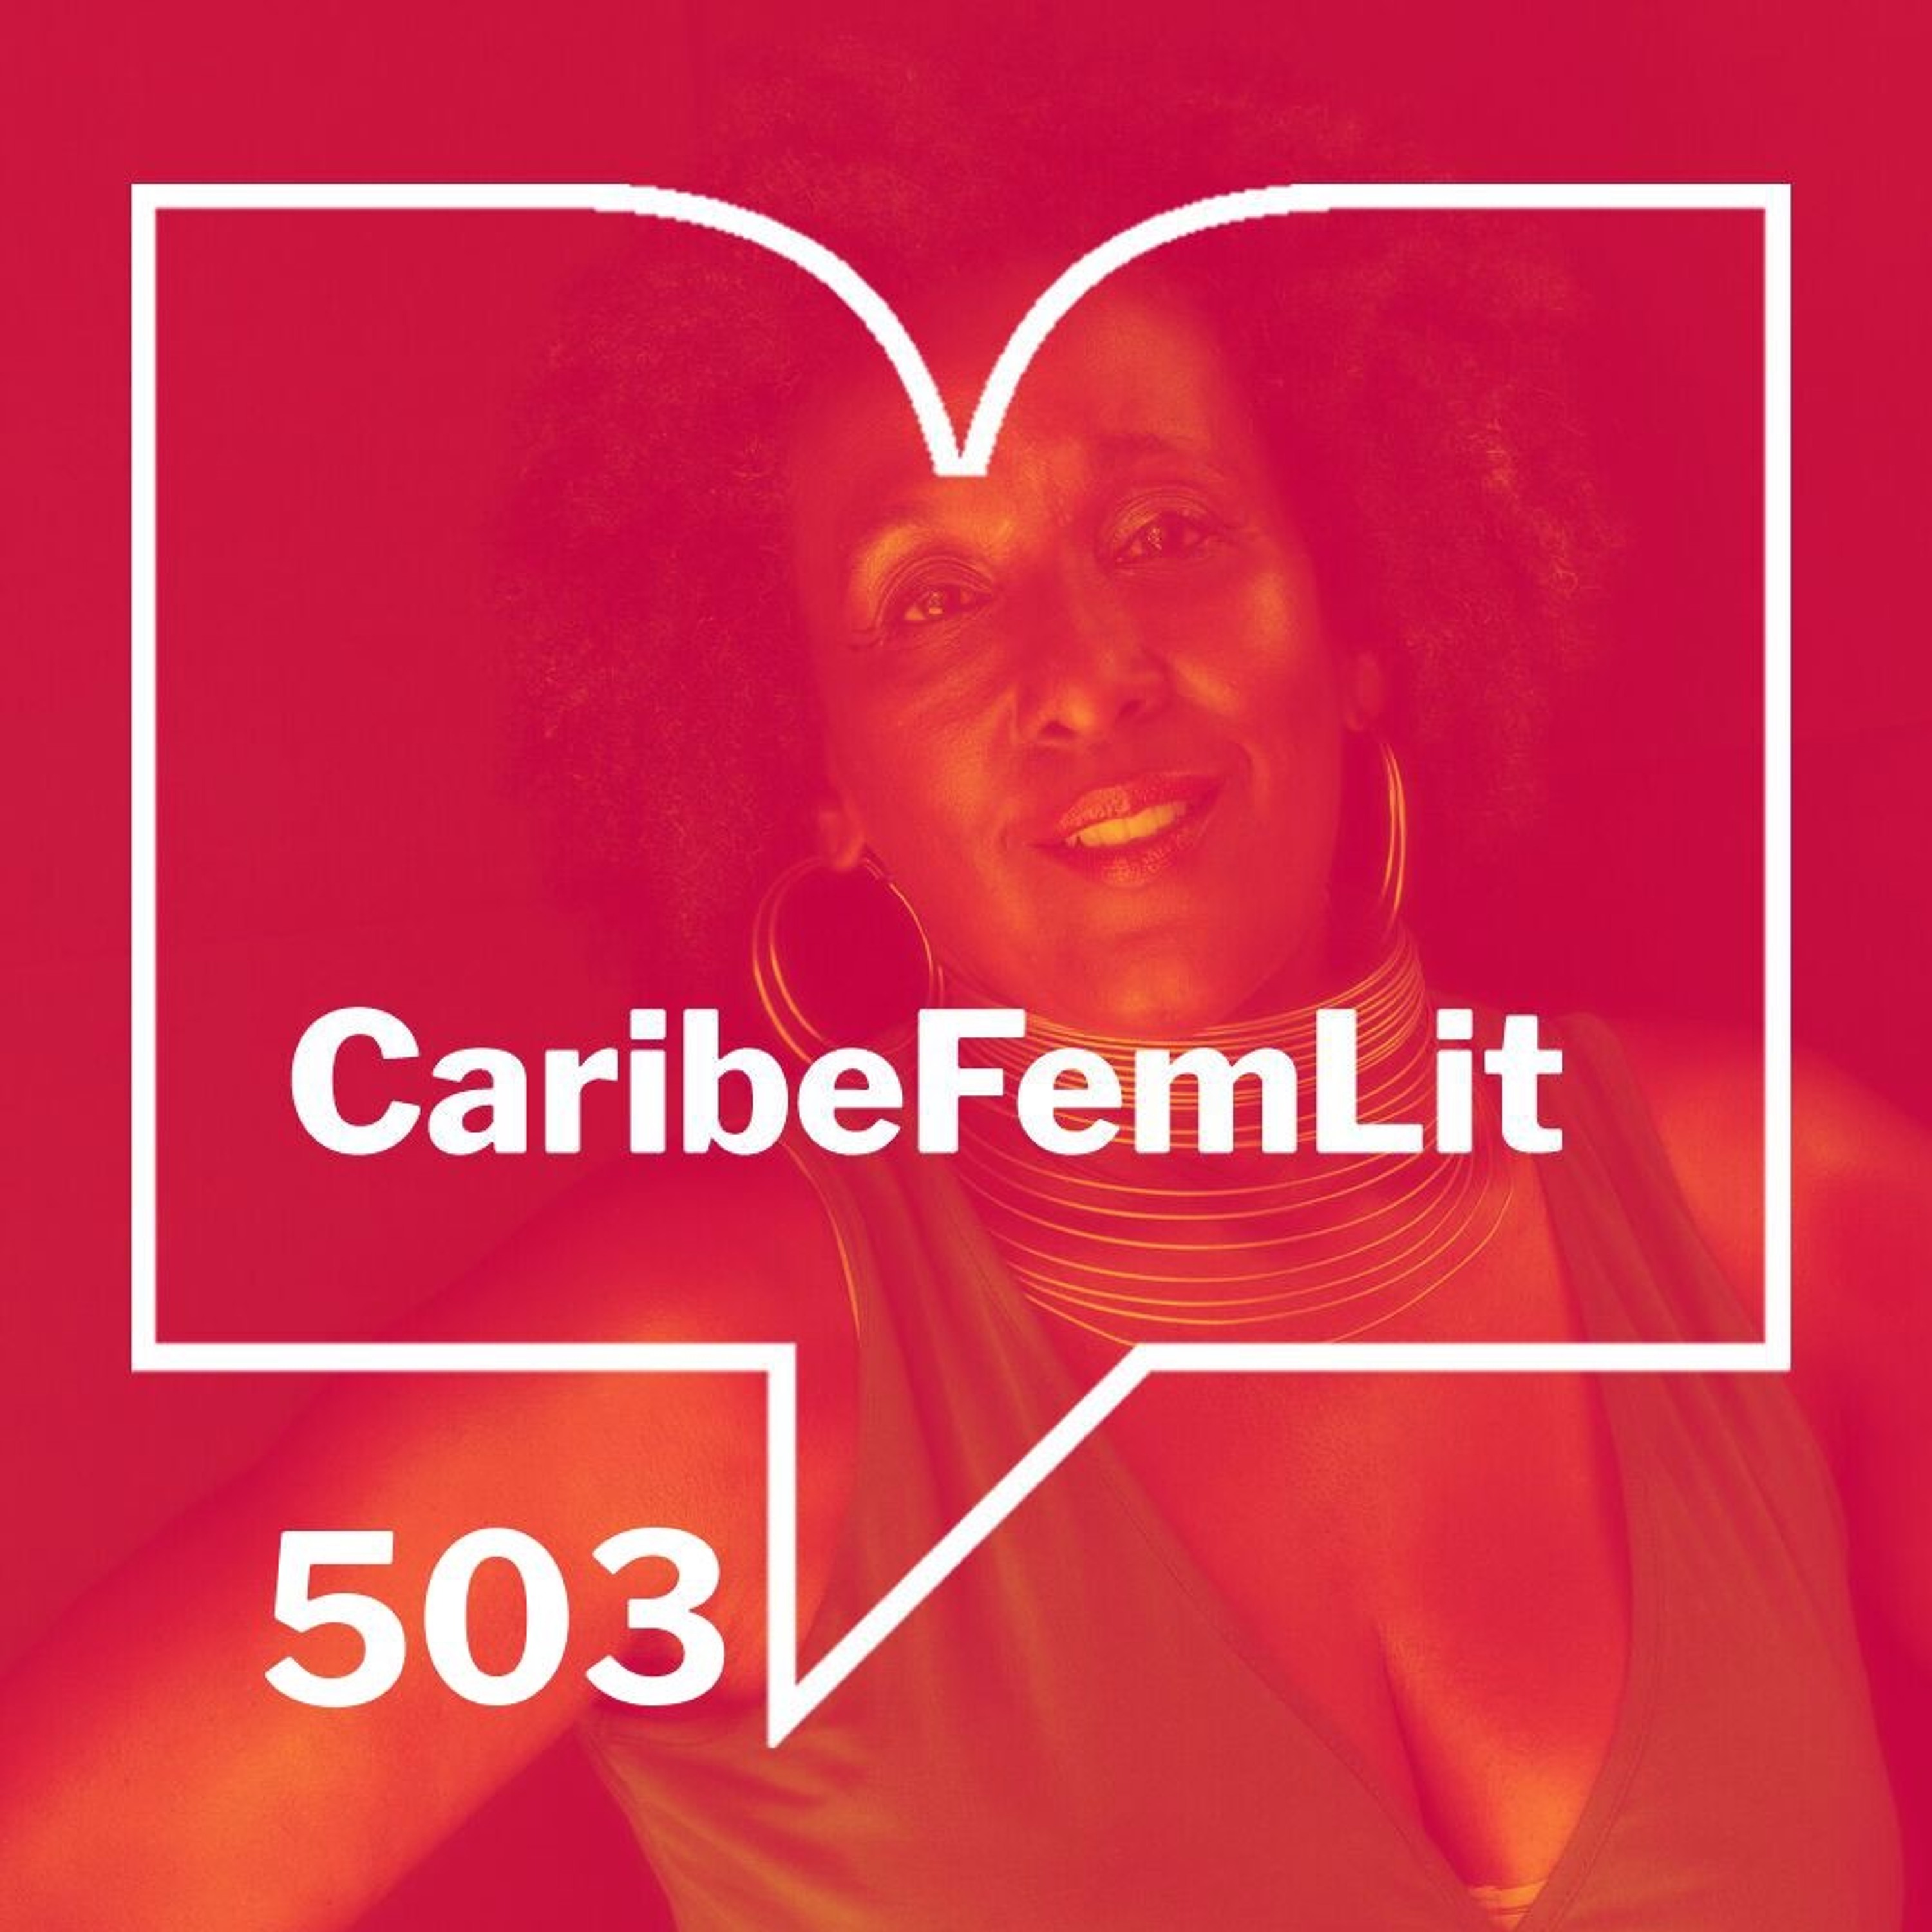 Episodio 503 - CaribeFemLit. Mayra Santos Febres y la Cumbre Afro